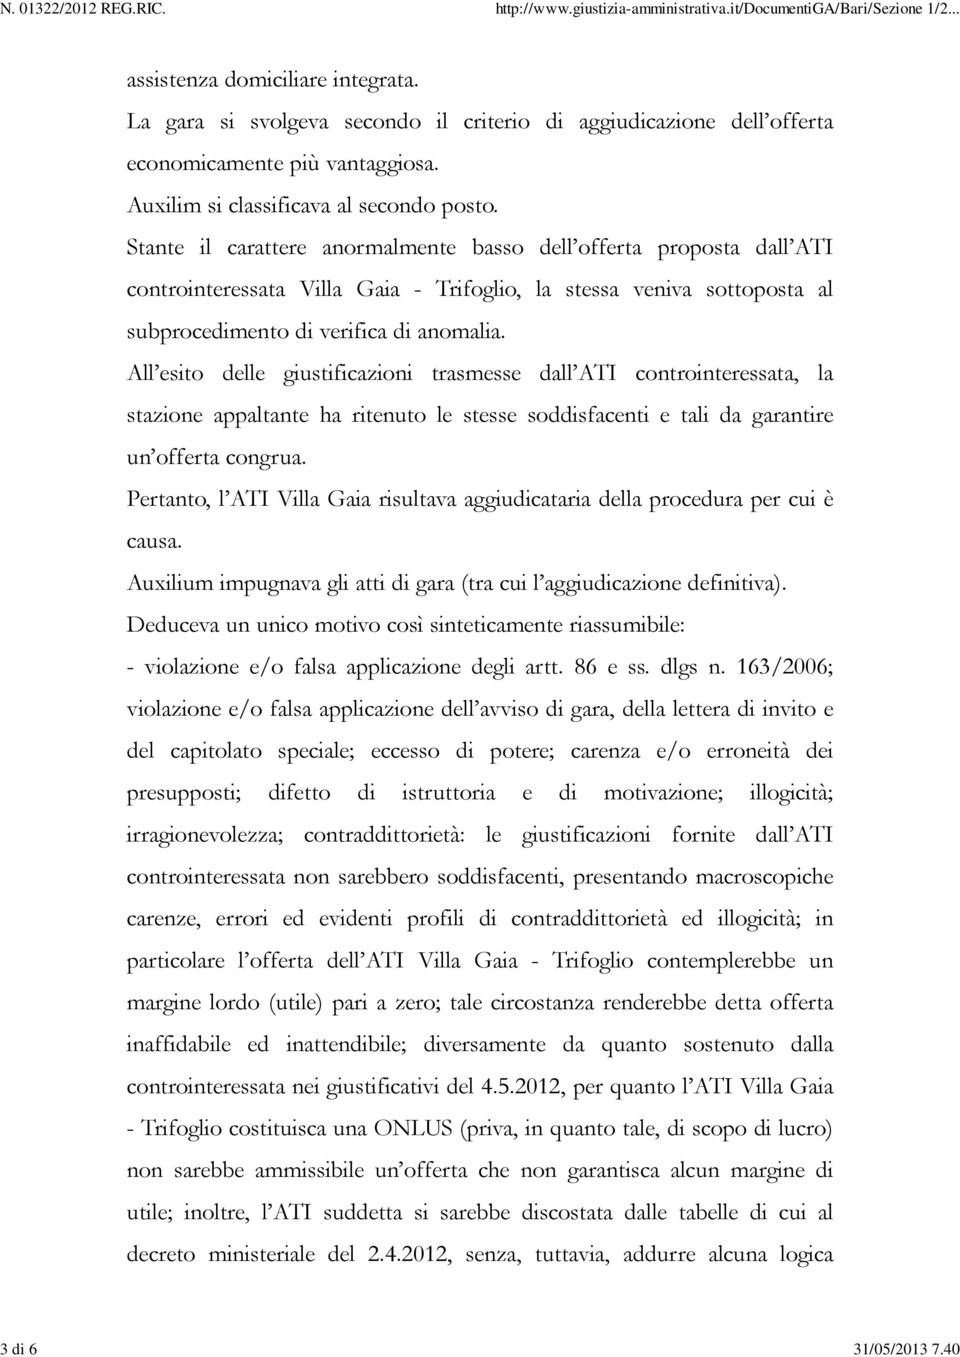 Stante il carattere anormalmente basso dell offerta proposta dall ATI controinteressata Villa Gaia - Trifoglio, la stessa veniva sottoposta al subprocedimento di verifica di anomalia.